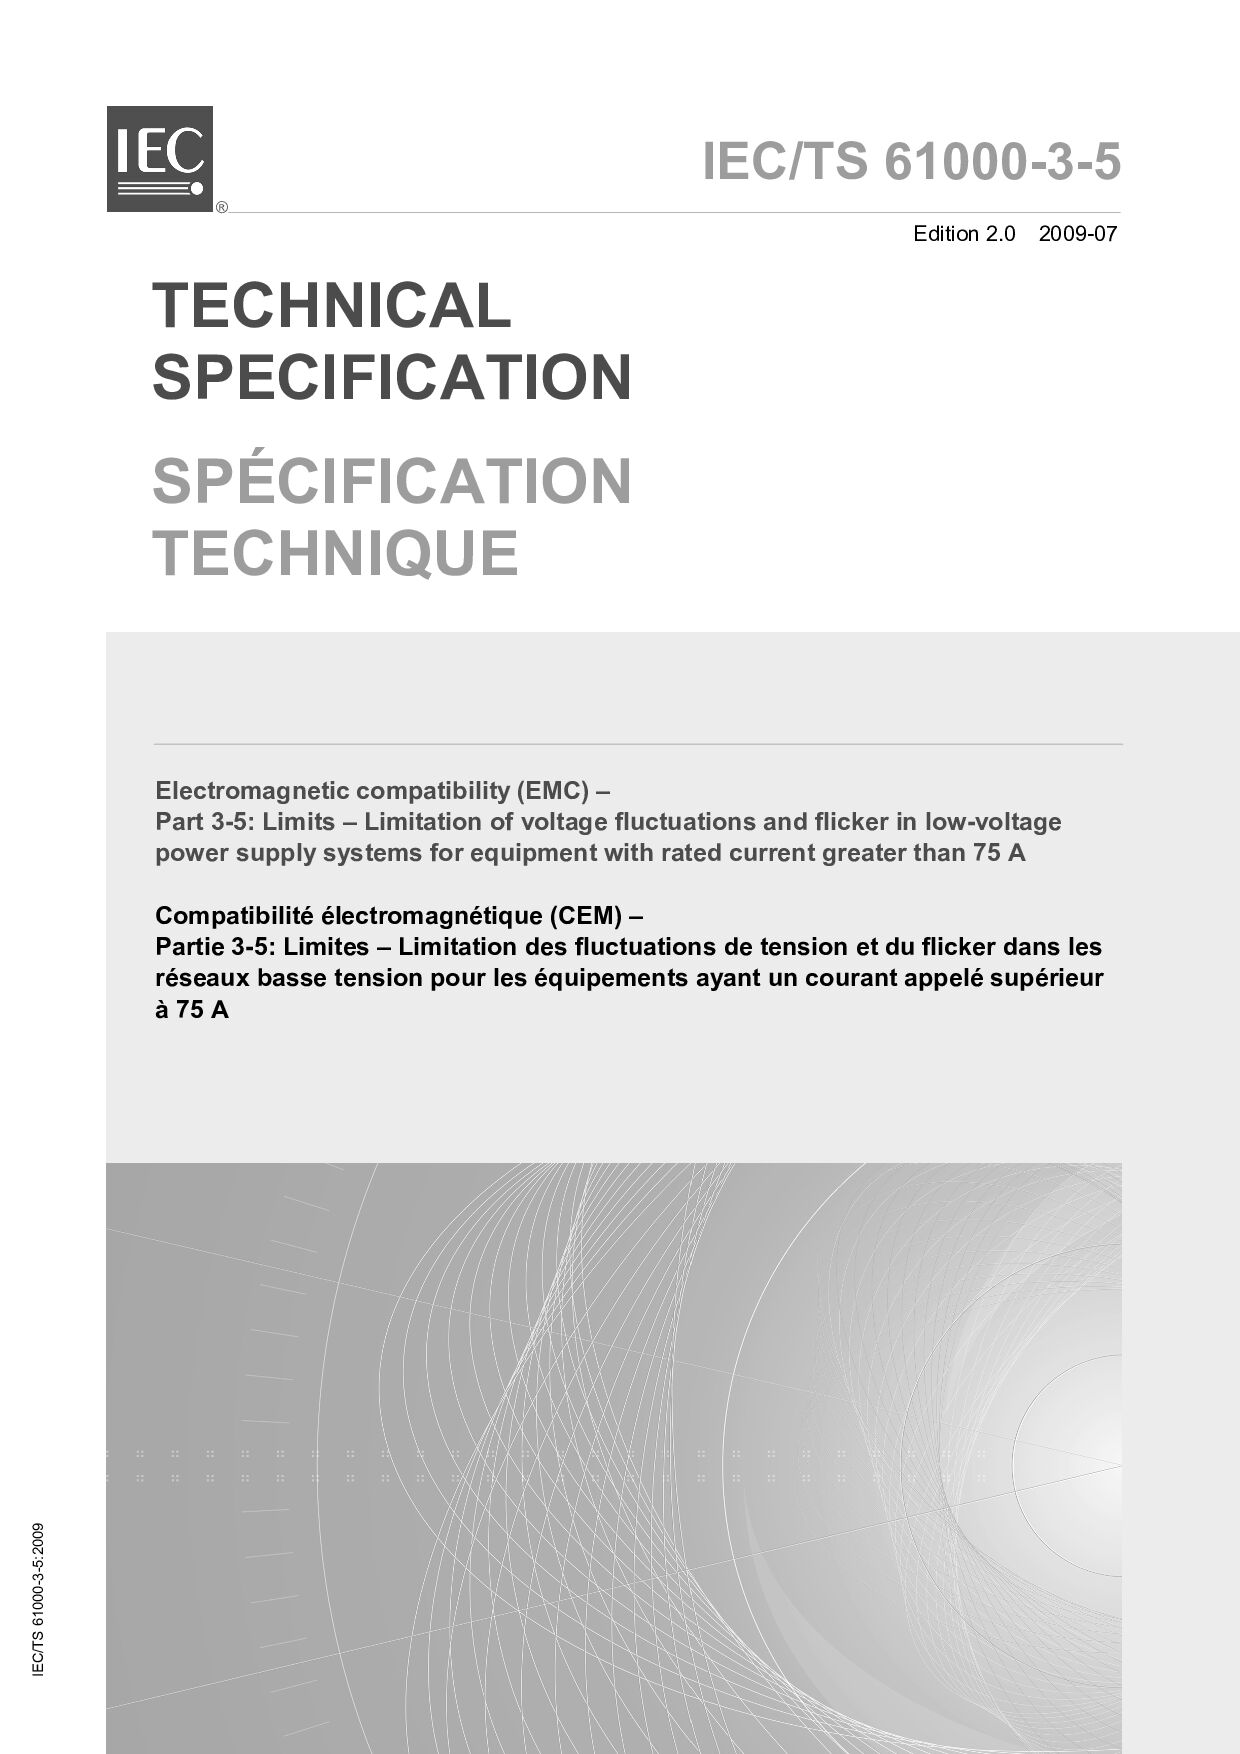 IEC TS 61000-3-5:2009